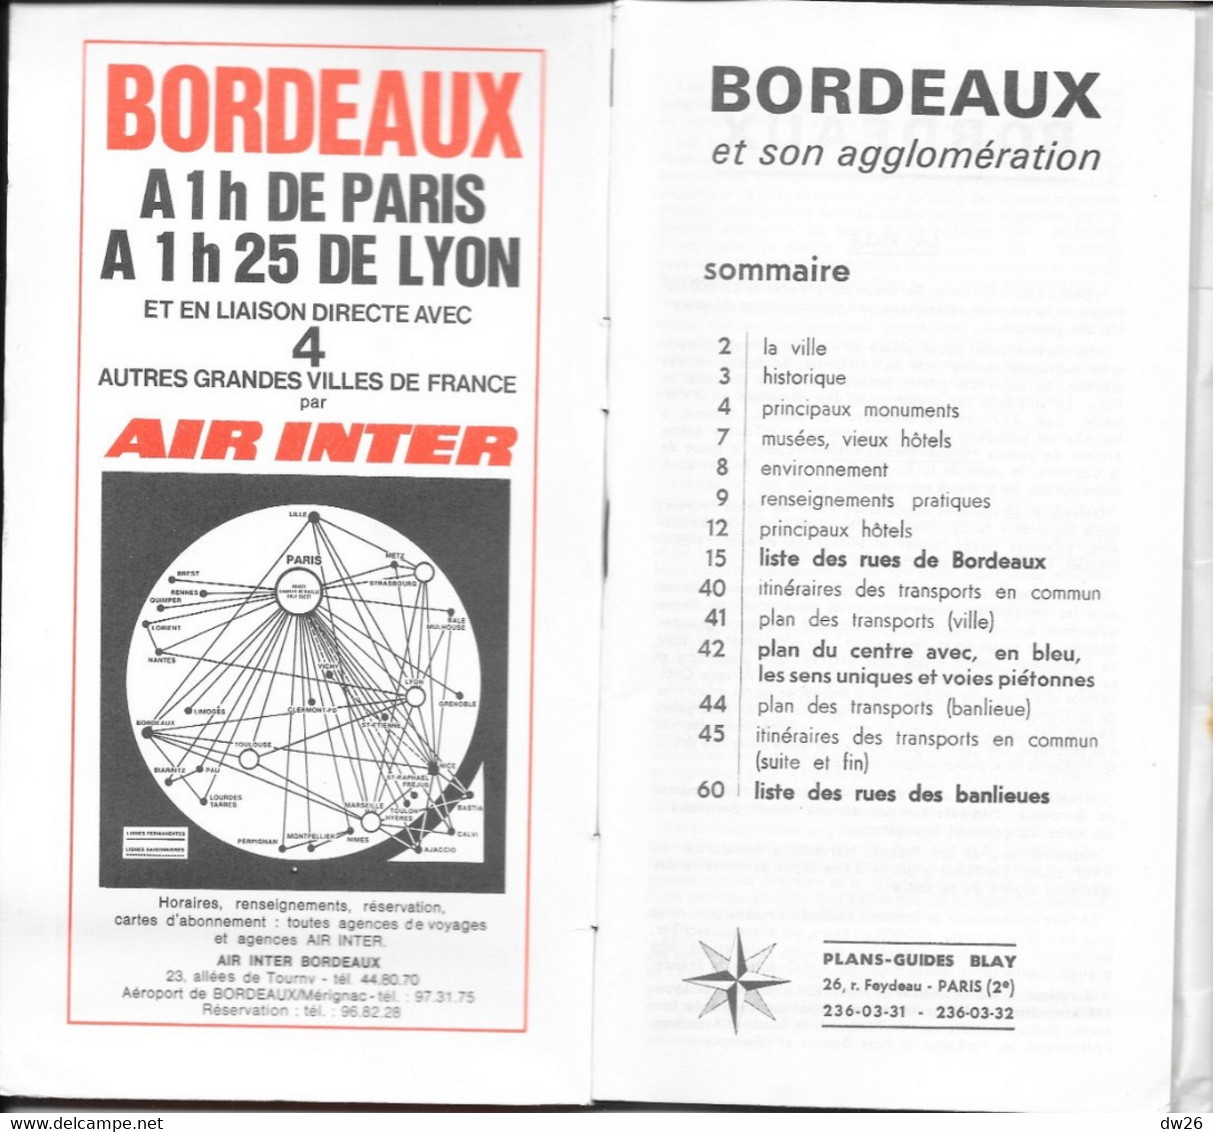 Plan Guide Blay: Bordeaux Et Son Agglomération: Bassens, Bègles, Mérignac, Pessac, Talence... Répertoire Des Rues - Other & Unclassified